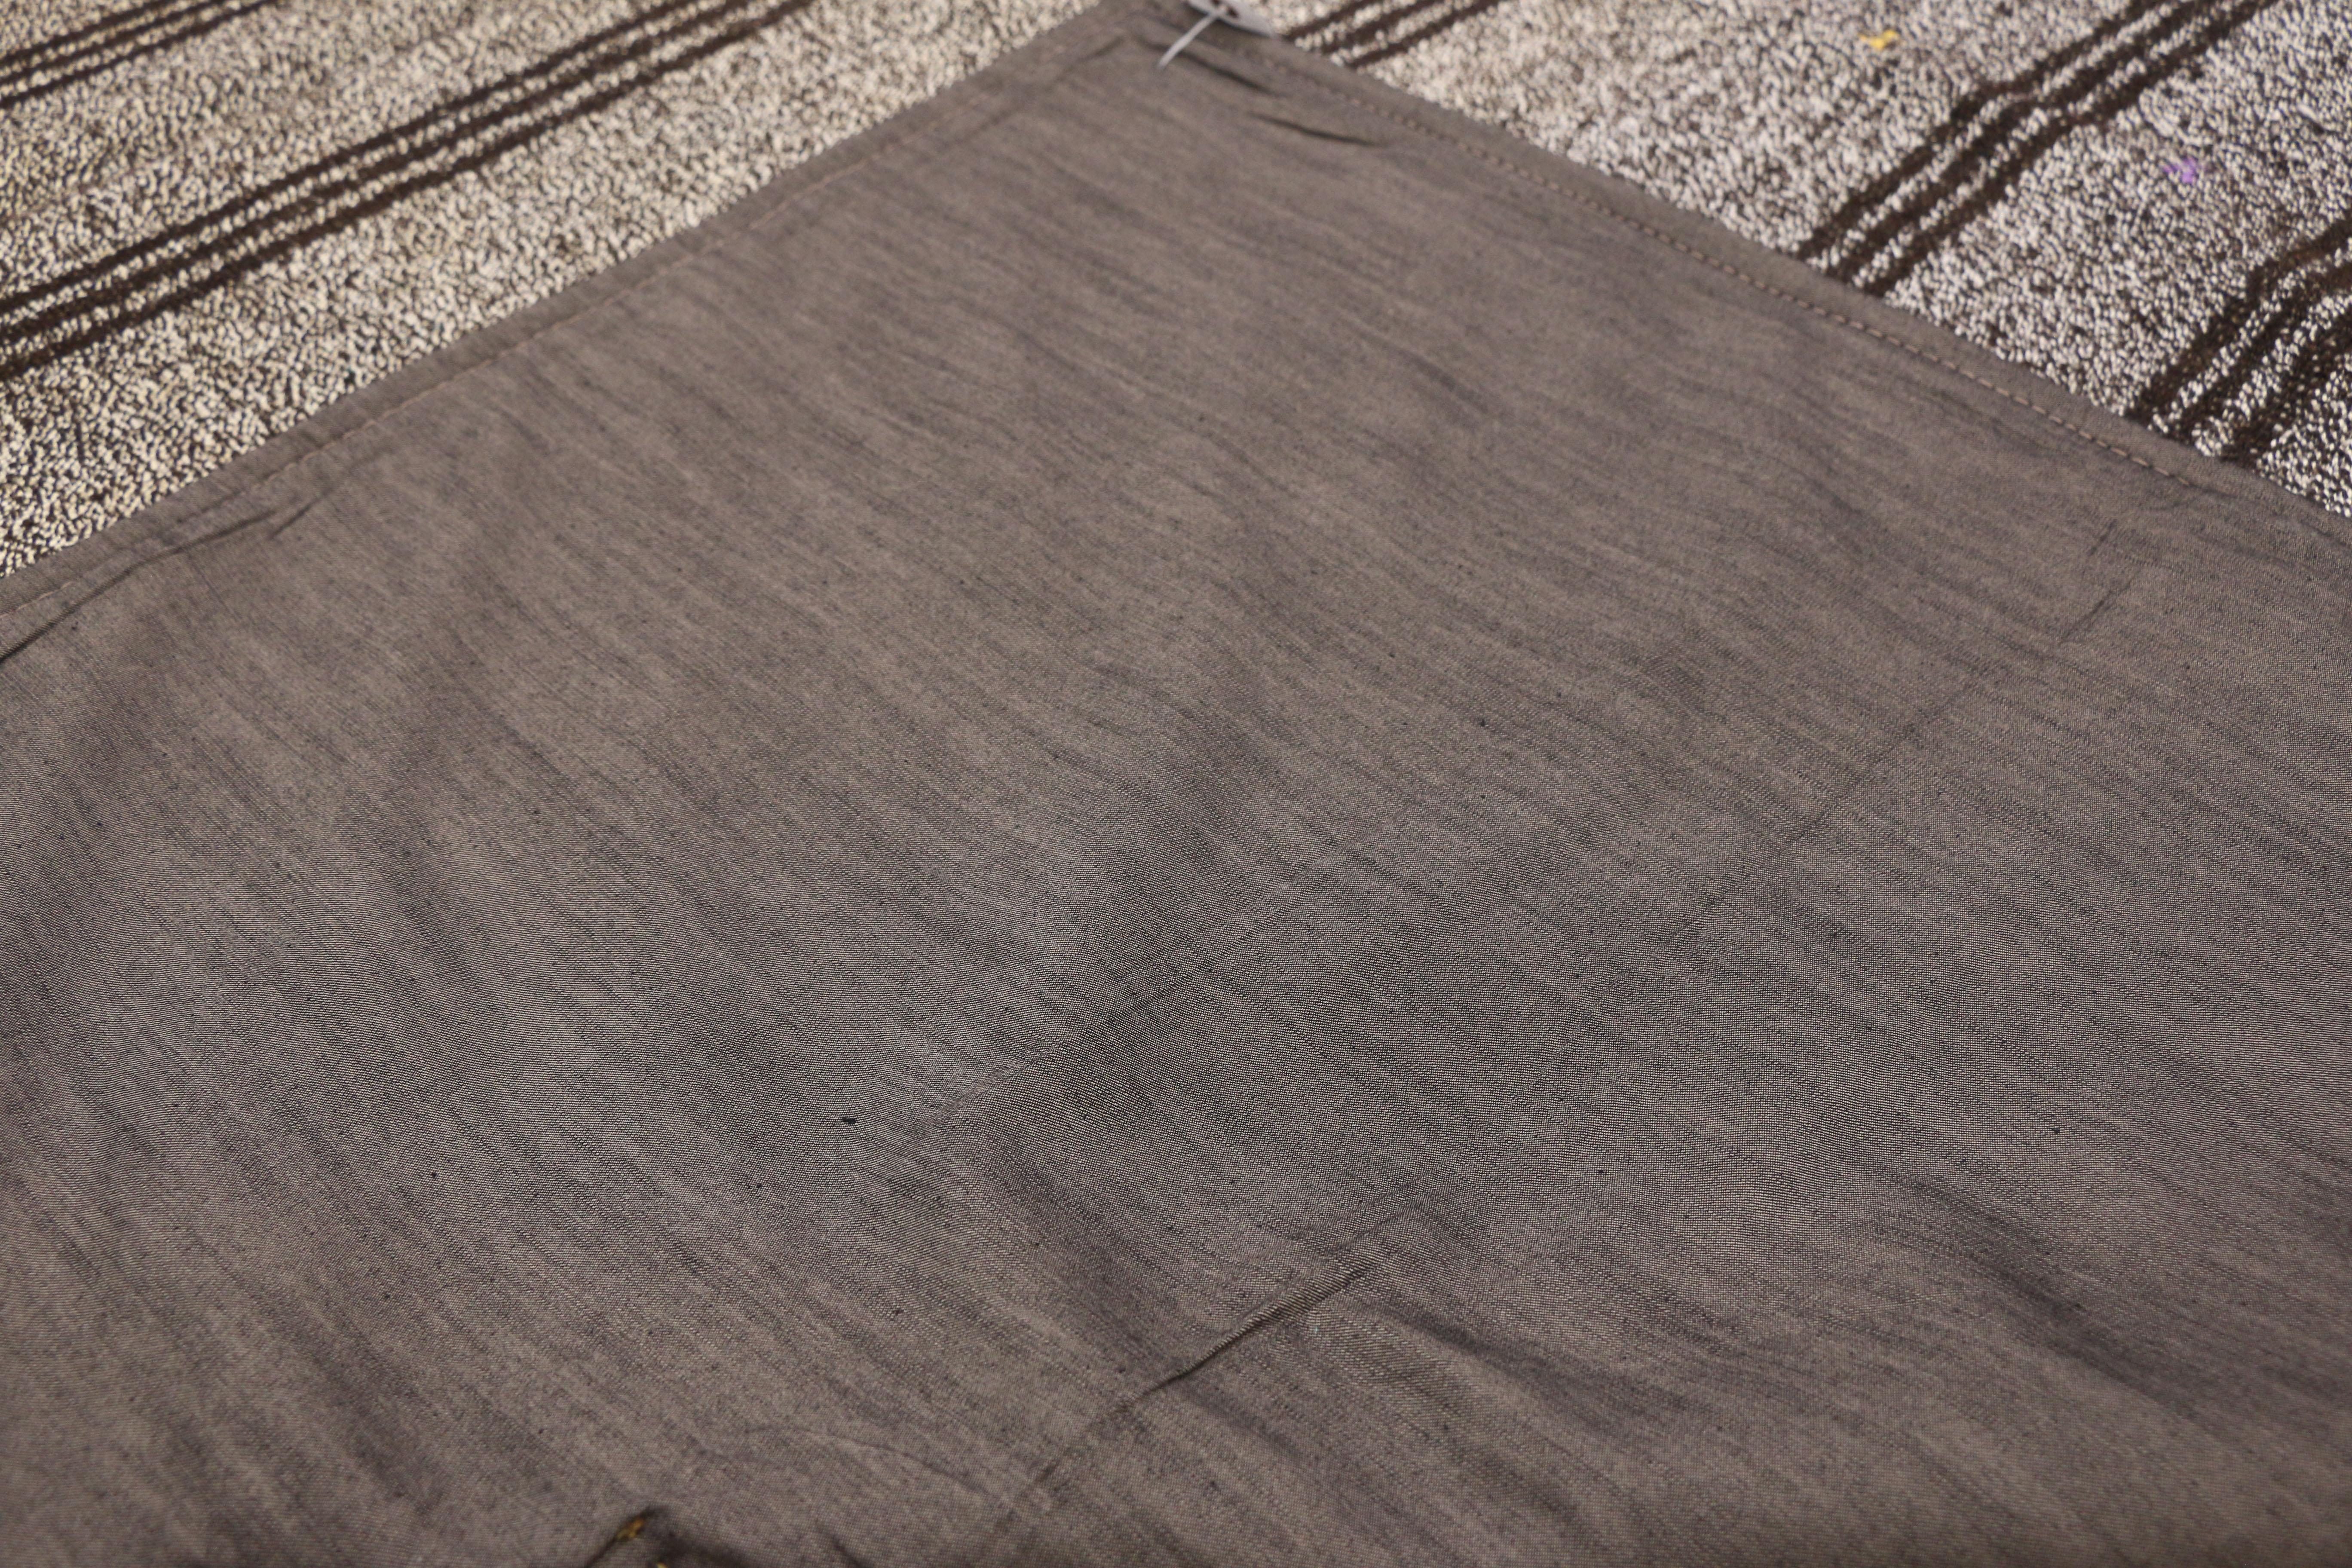 Wool Vintage Turkish Gray Flatweave Kilim Rug with Black Stripes, Flat-weave Rug